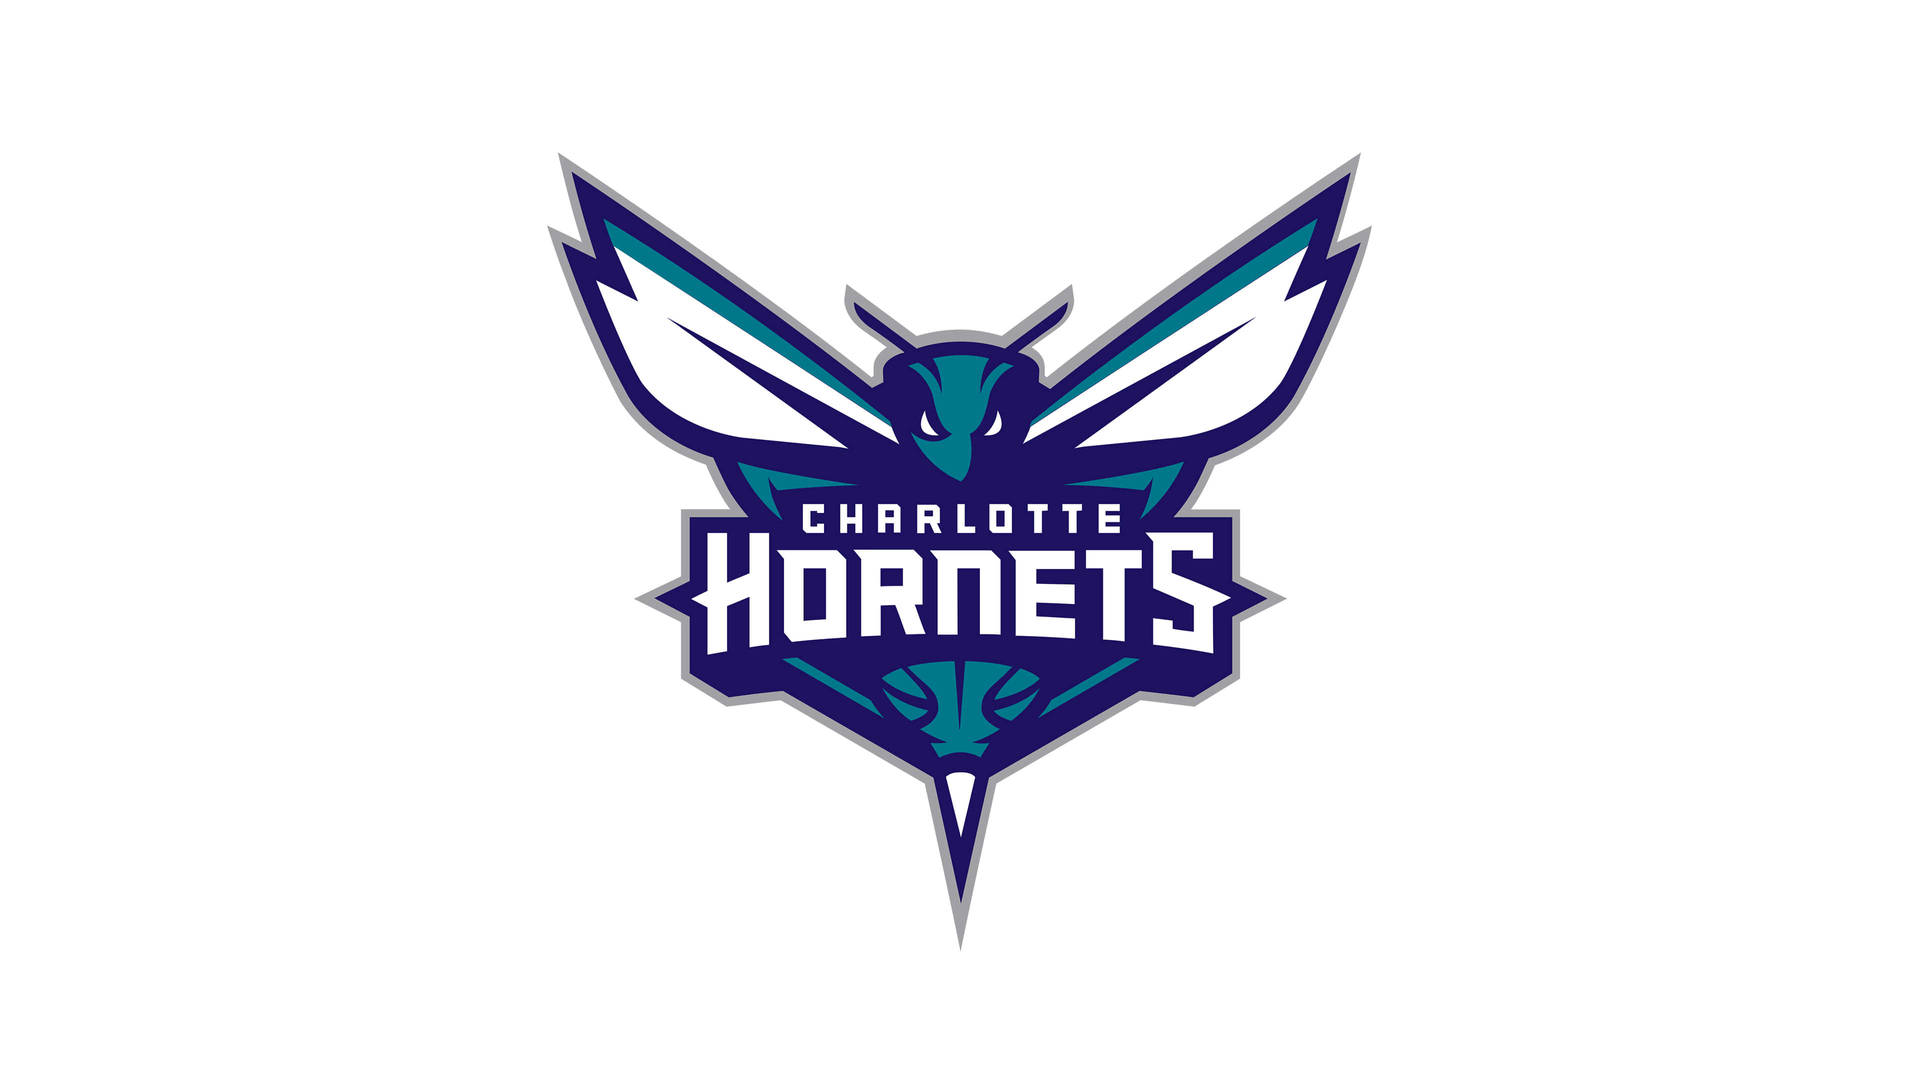 Charlotte Hornets Official Logo